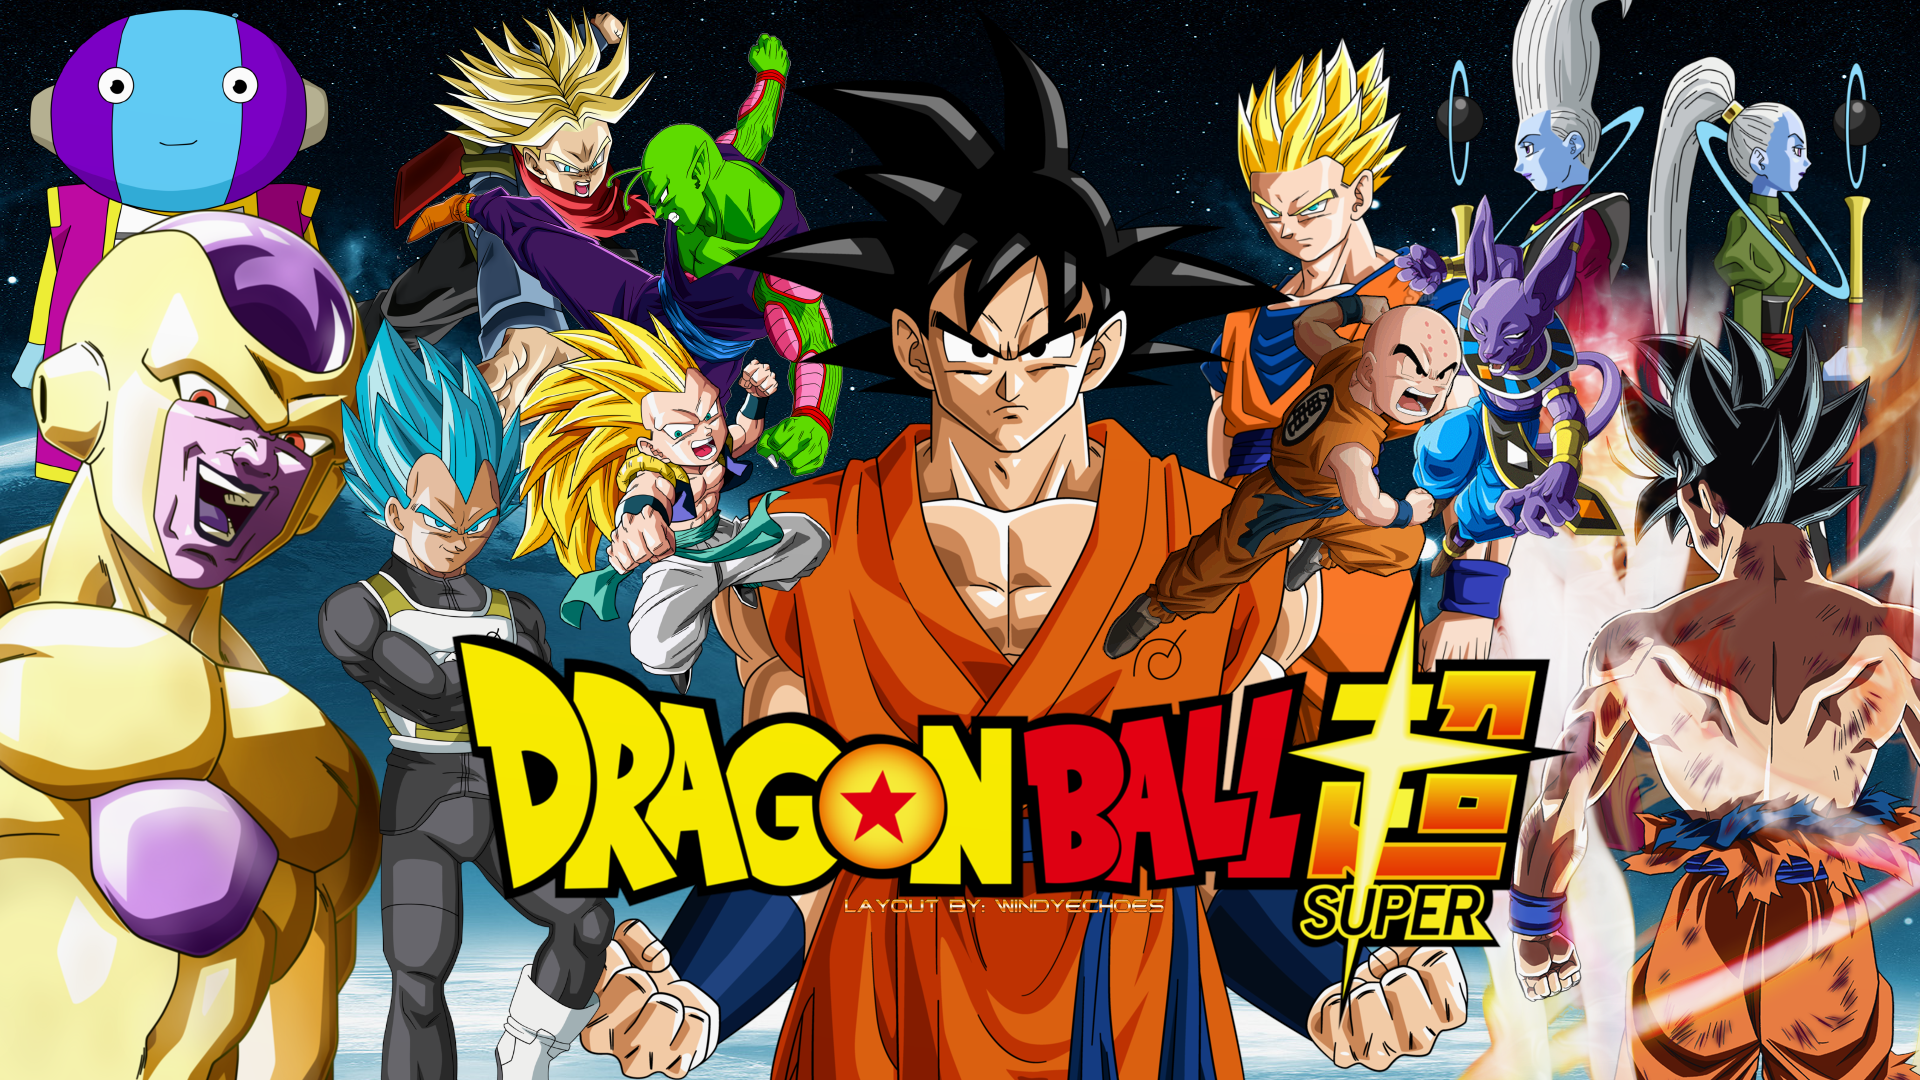 Super Esferas by lucario-strike on DeviantArt  Dragon ball wallpapers,  Anime dragon ball goku, Dragon ball z